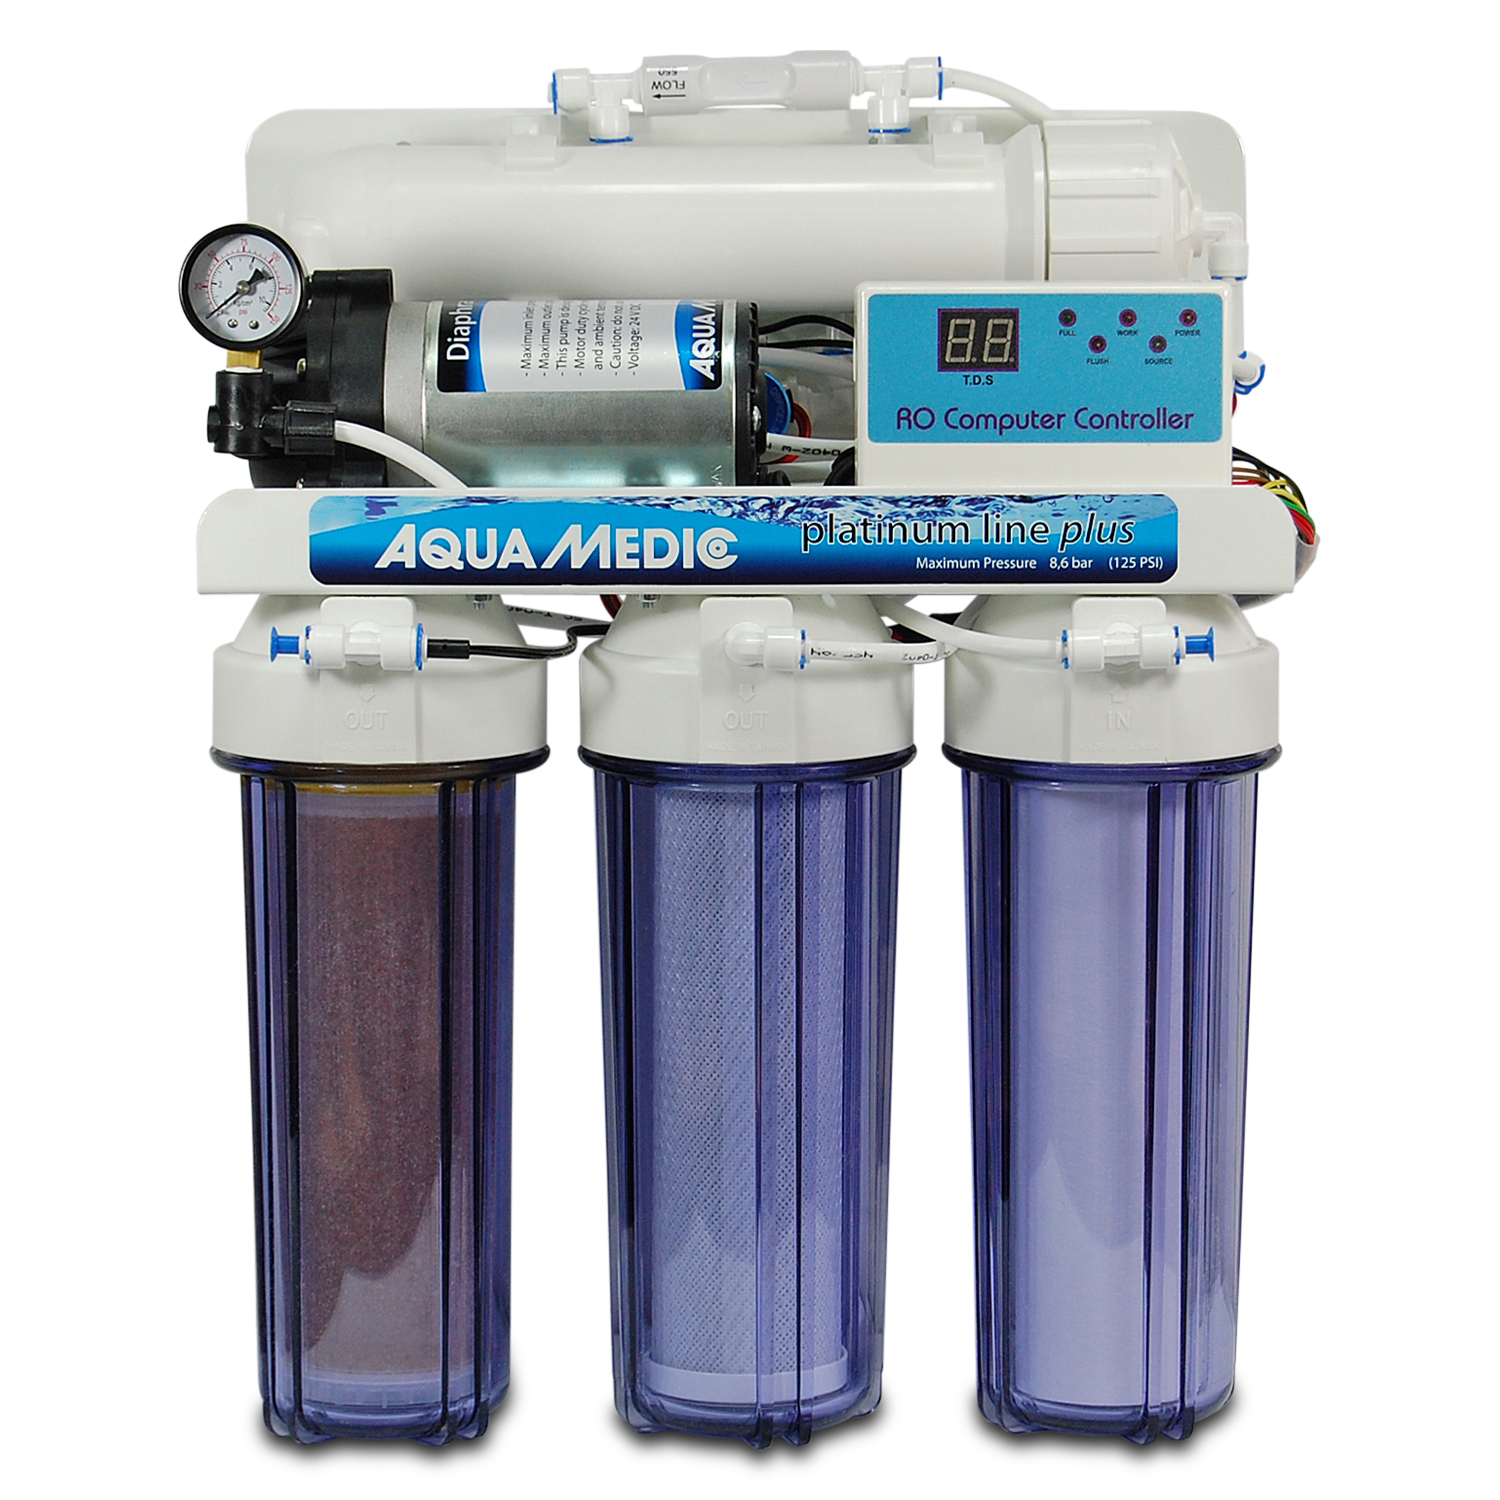 Aqua Medic platinum line plus 400l/Day